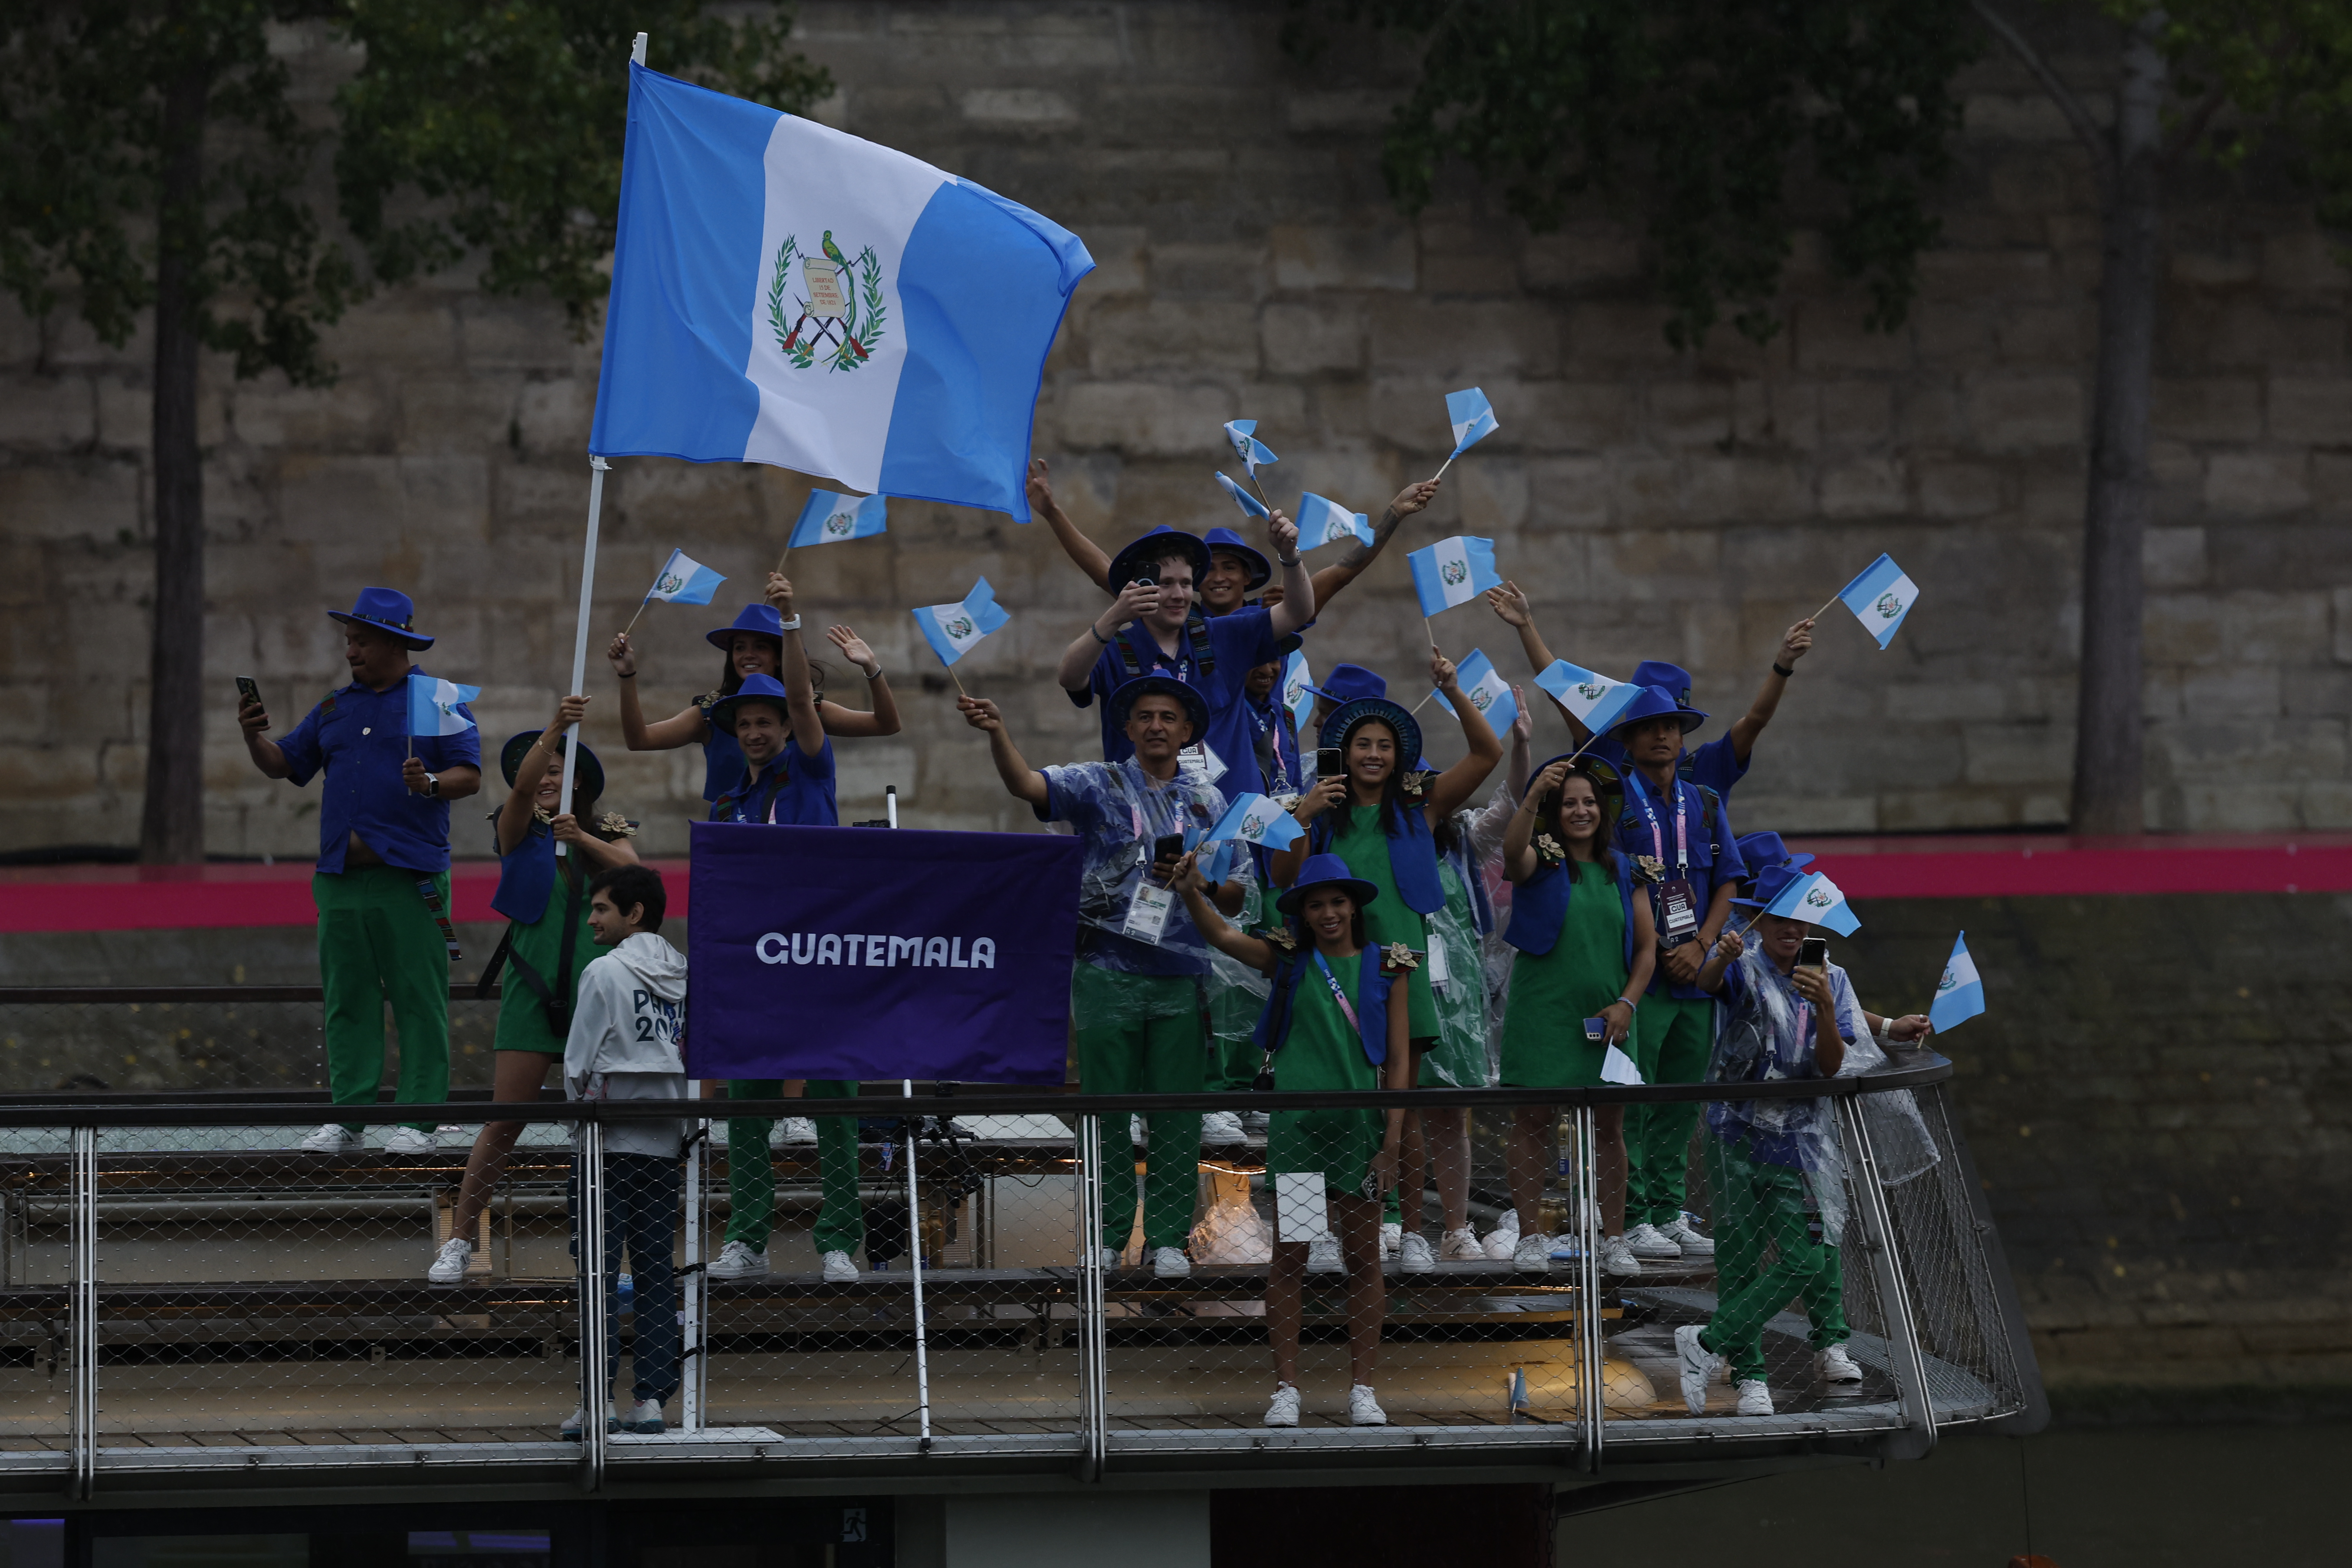 La delegación de Guatemala desfila por el río Sena, durante la ceremonia de inauguración de los Juegos Olímpicos de París 2024.